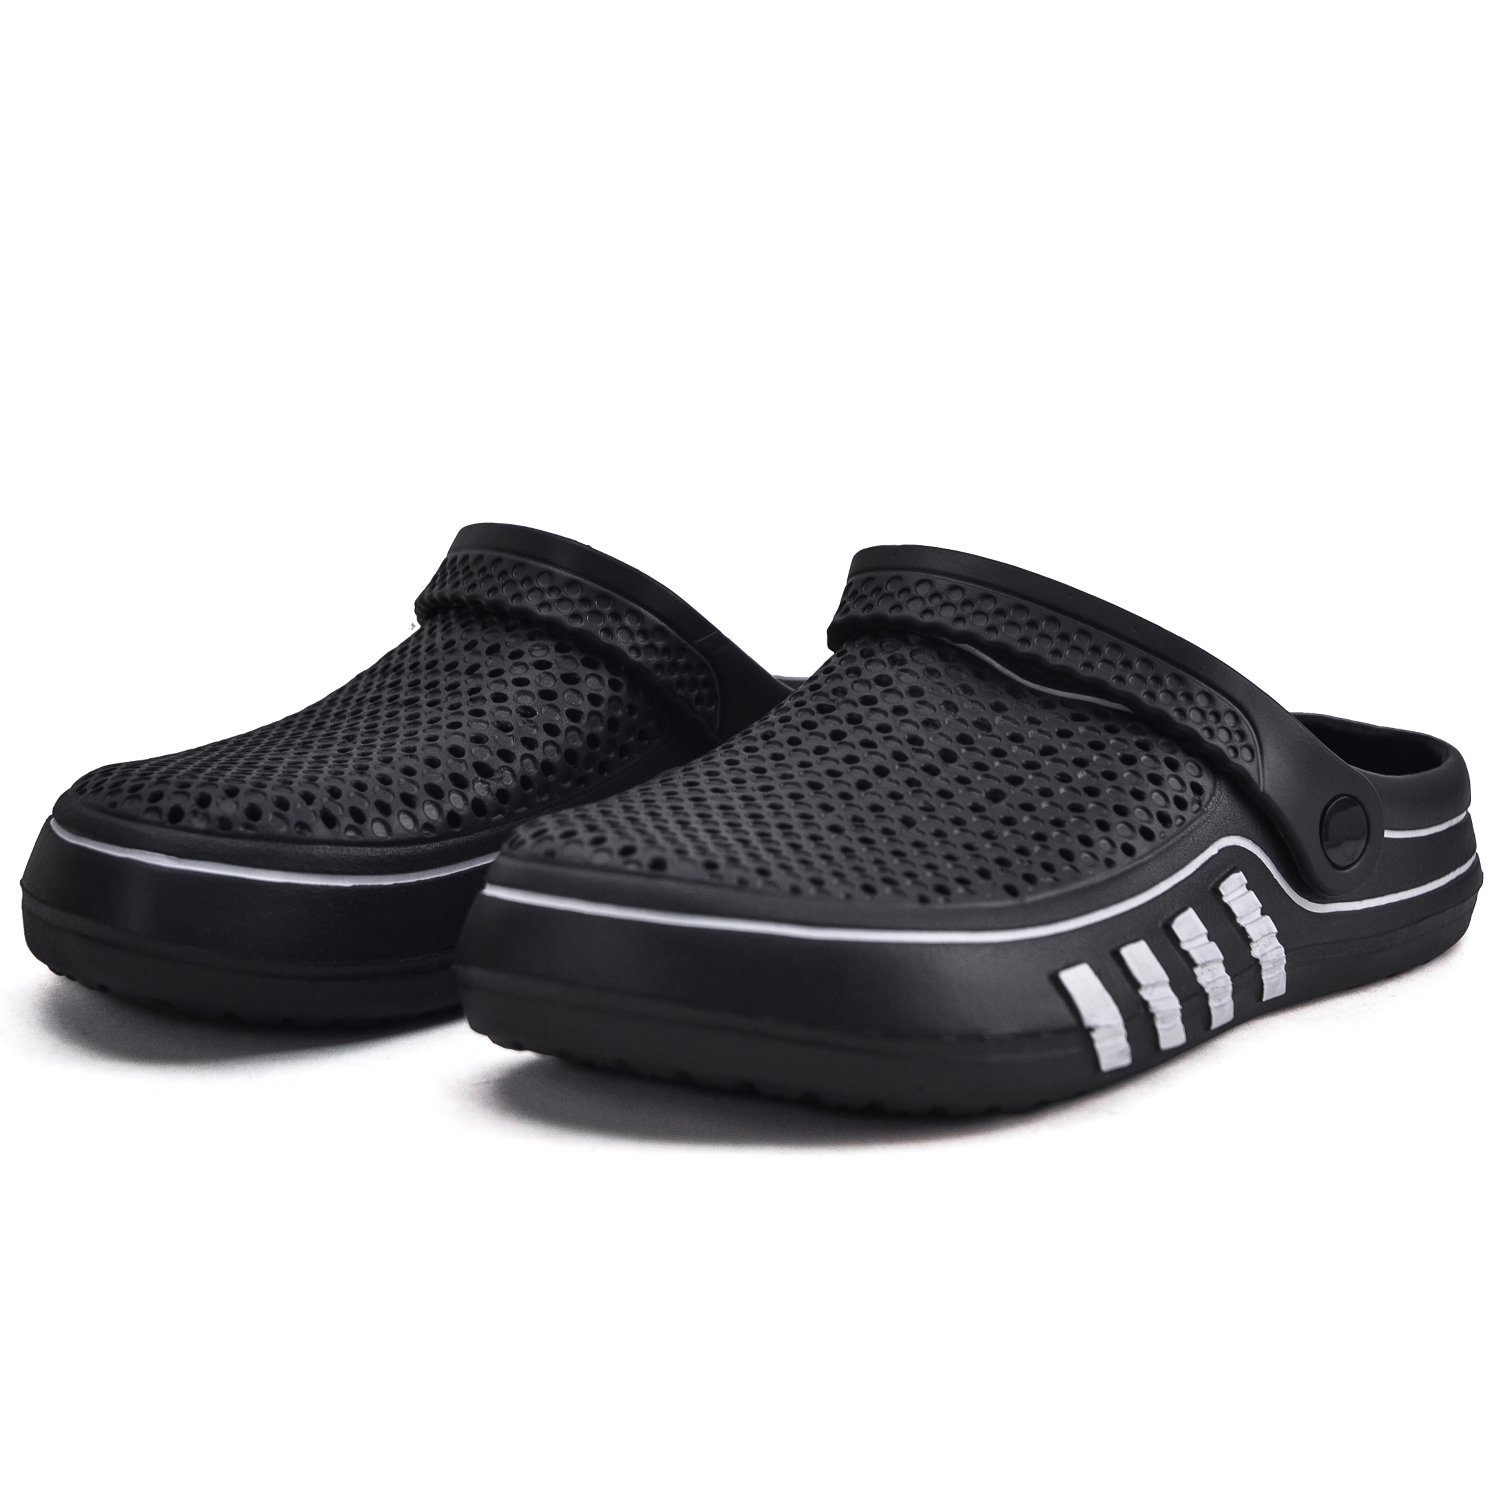 VONMAY Men's Clogs Summer Slip On Anti-slip Sandals Shower Slippers - image 2 of 8